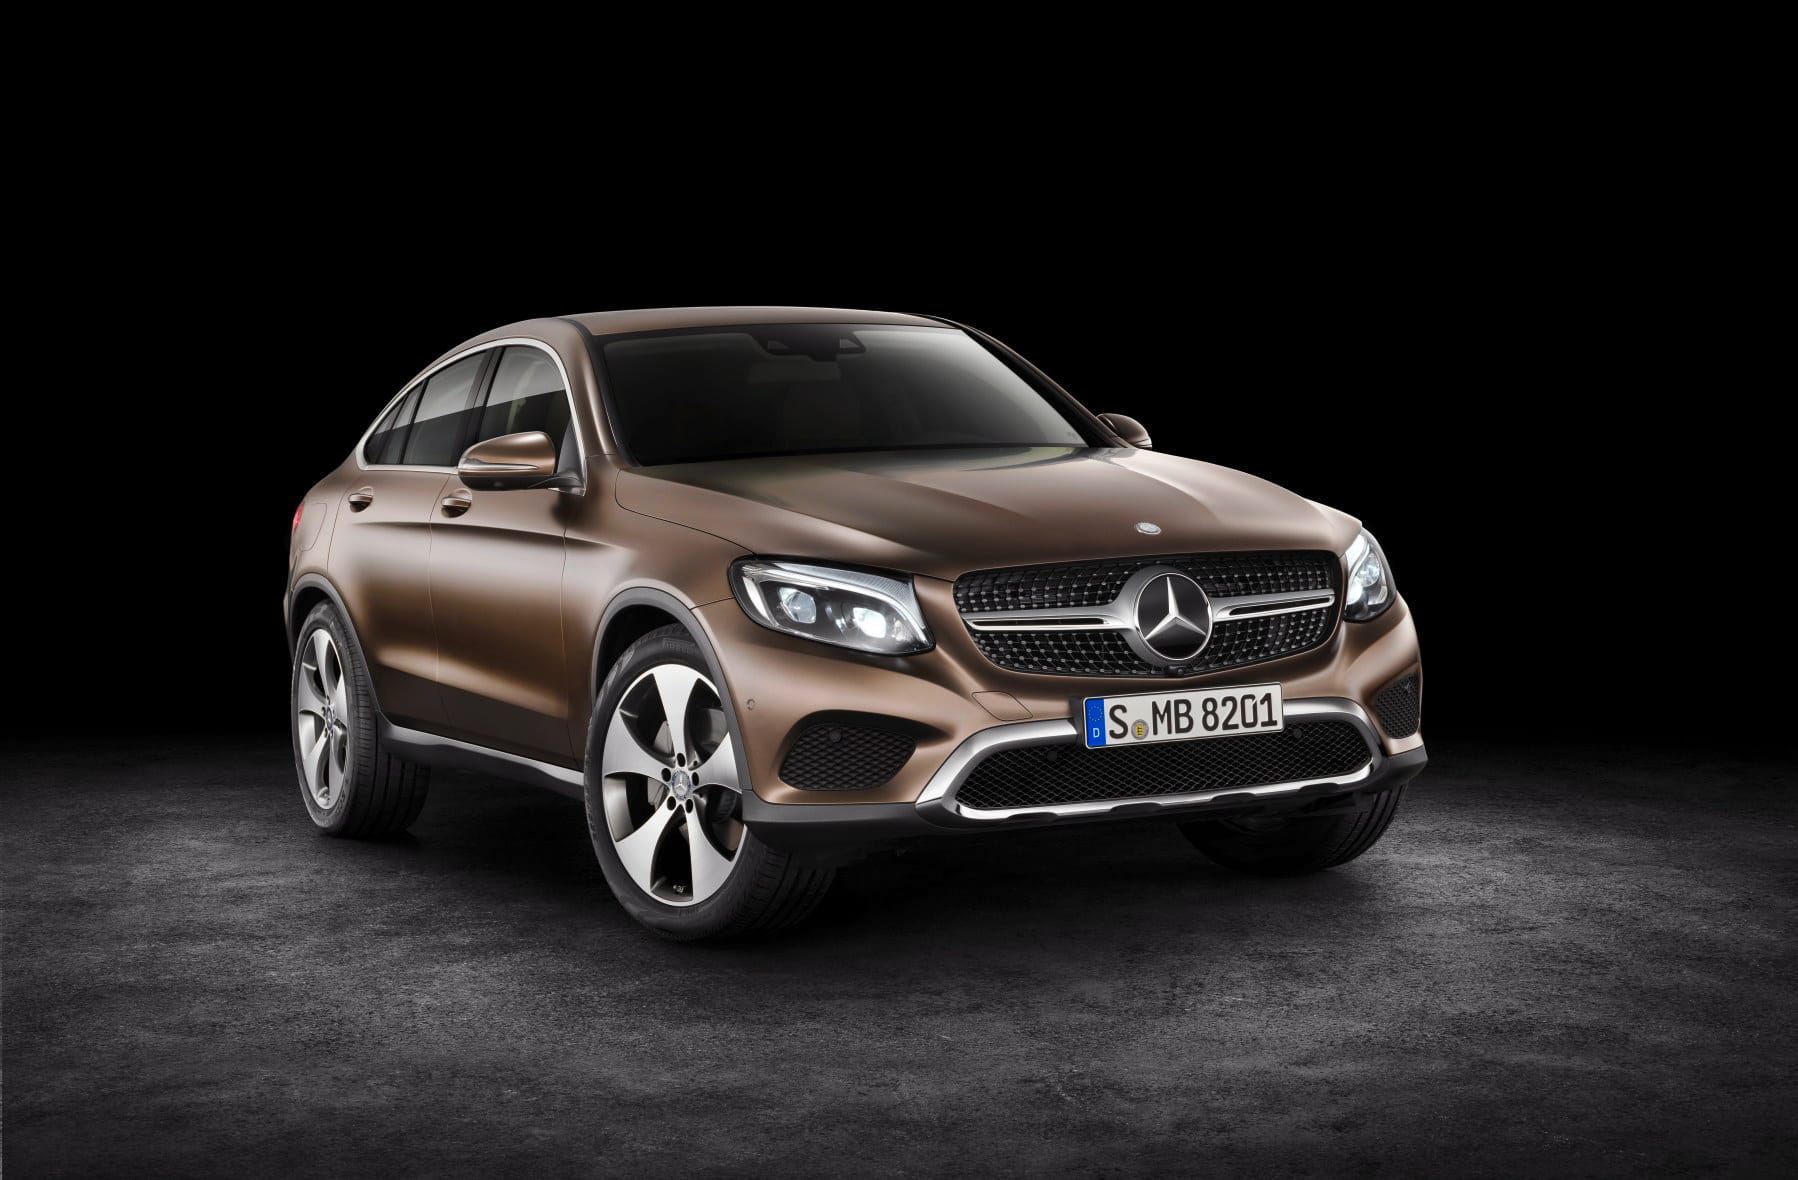 Der Einstiegspreis für den Mercedes GLC 250 liegt bei 44.500 Euro. Das GLC Coupé dürfte daher bei unter 50.000 Euro beginnen.